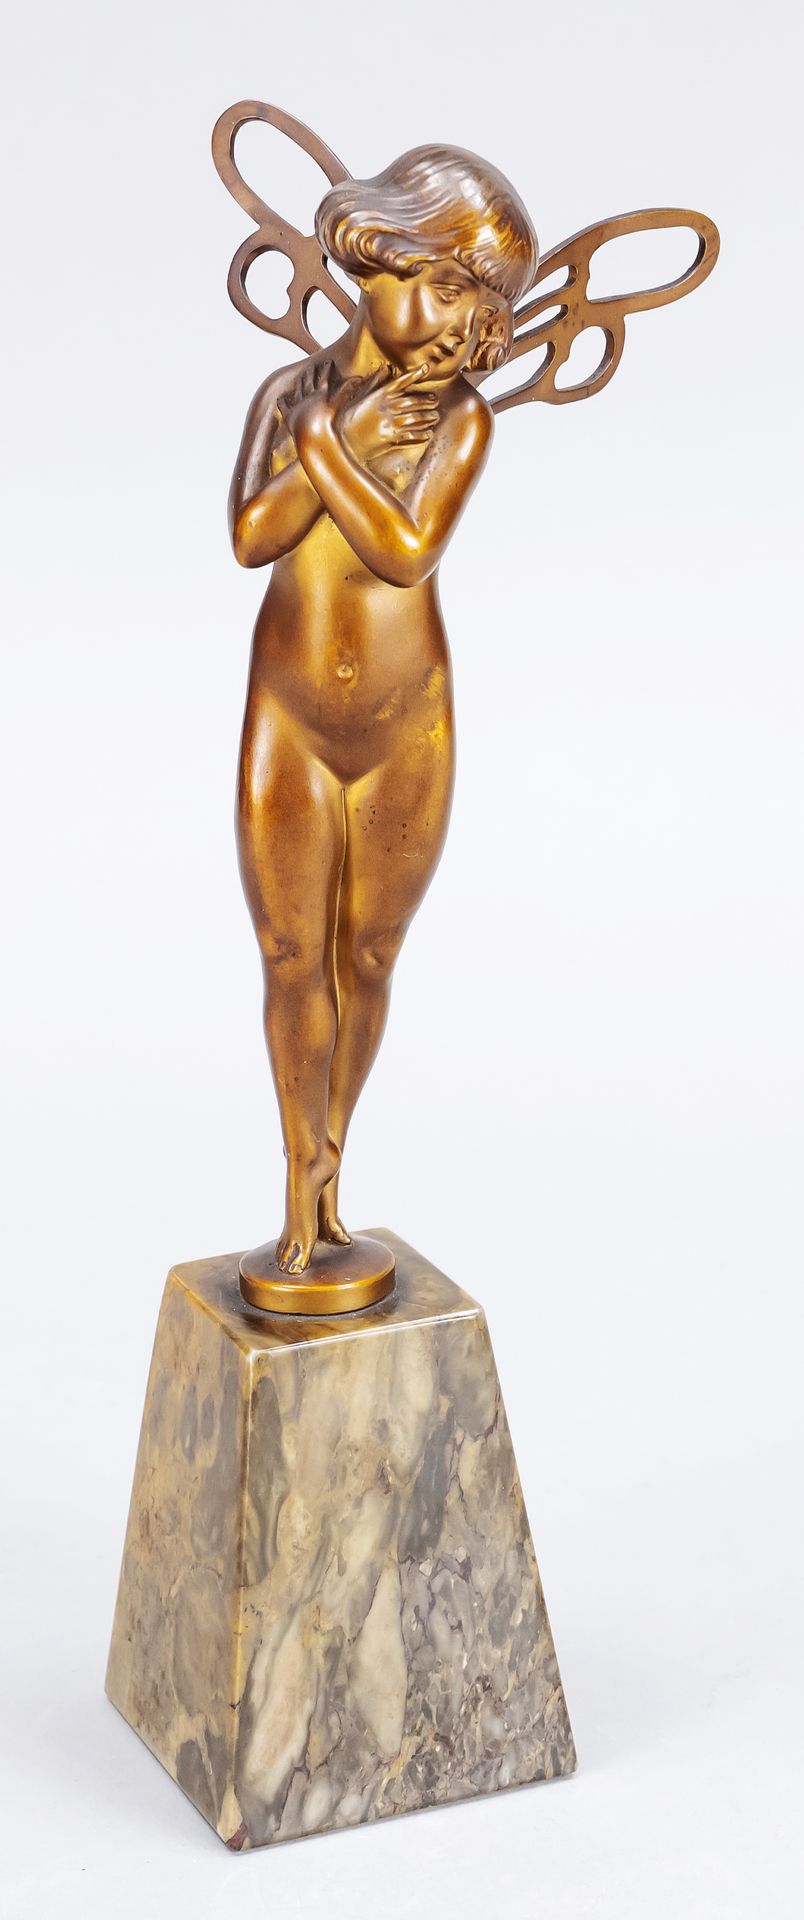 Null 弗朗茨-伊夫兰德（1862-1935），折臂小精灵，大理石基座上的浅棕色青铜，支架上有签名，高-g.27厘米